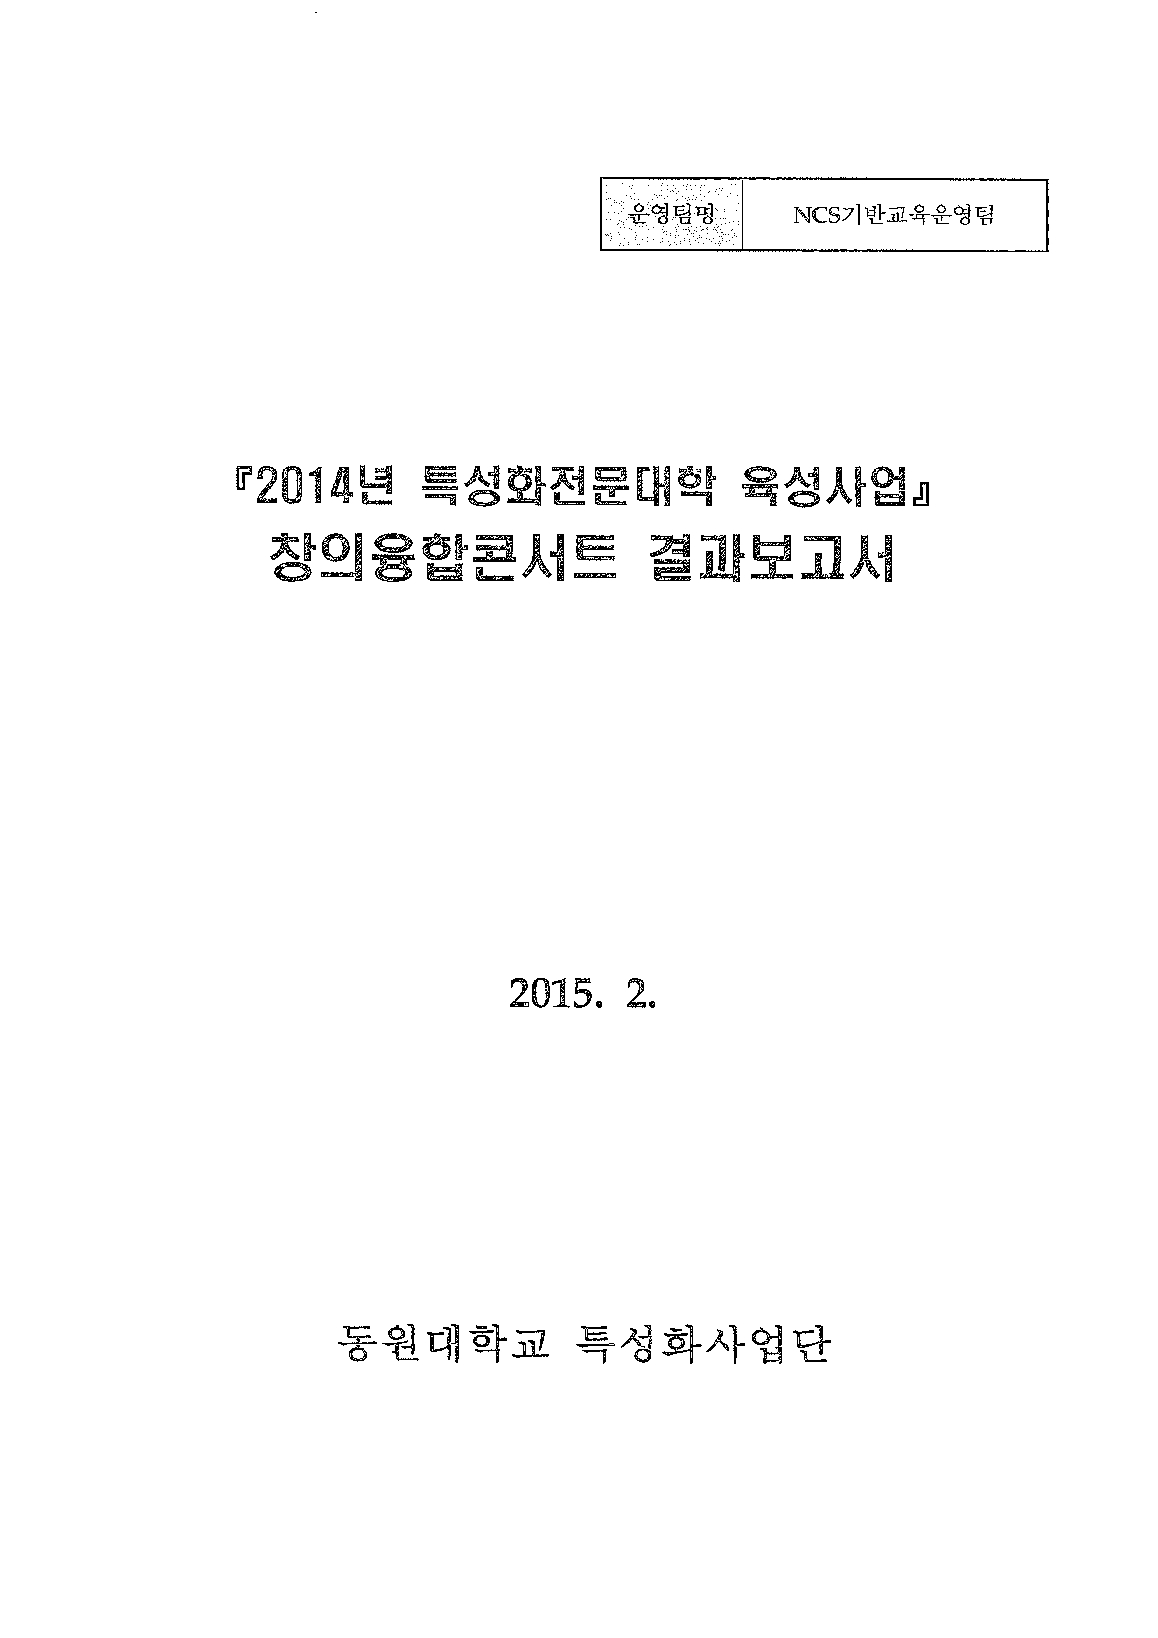 2014년 특성화전문대학육성사업 창의융합콘서트 결과보고서